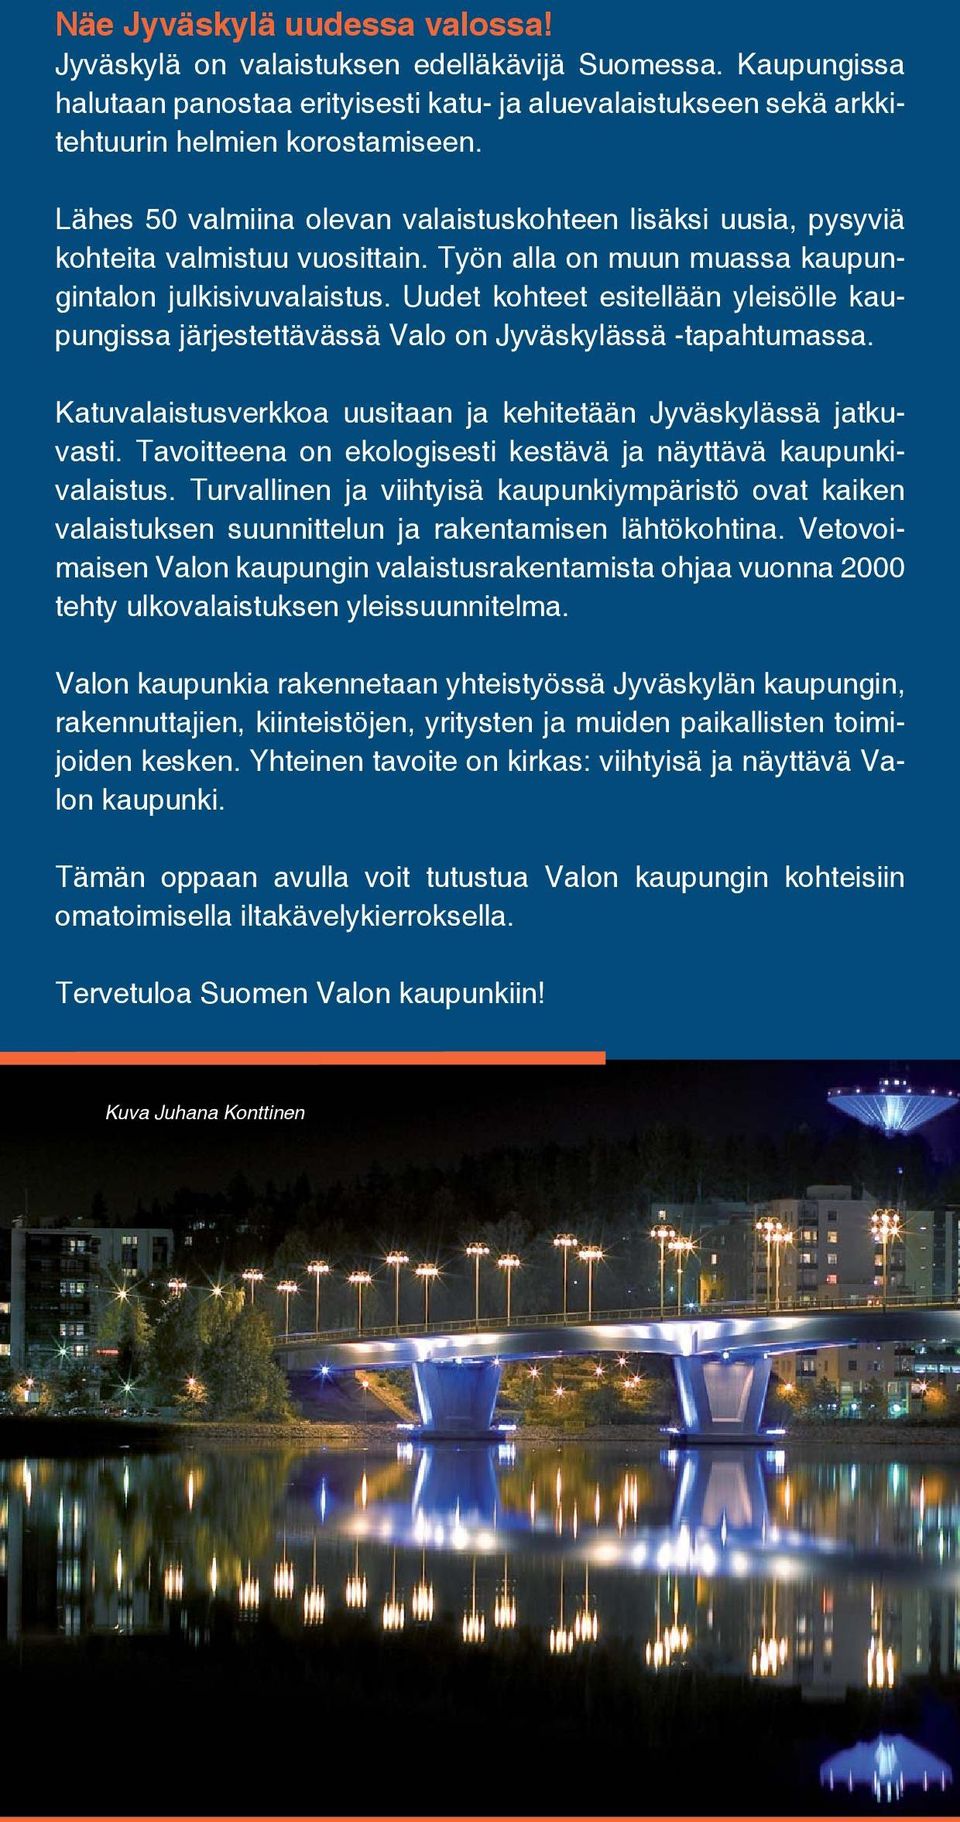 Uudet kohteet esitellään yleisölle kaupungissa järjestettävässä Valo on Jyväskylässä -tapahtumassa. Katuvalaistusverkkoa uusitaan ja kehitetään Jyväskylässä jatkuvasti.